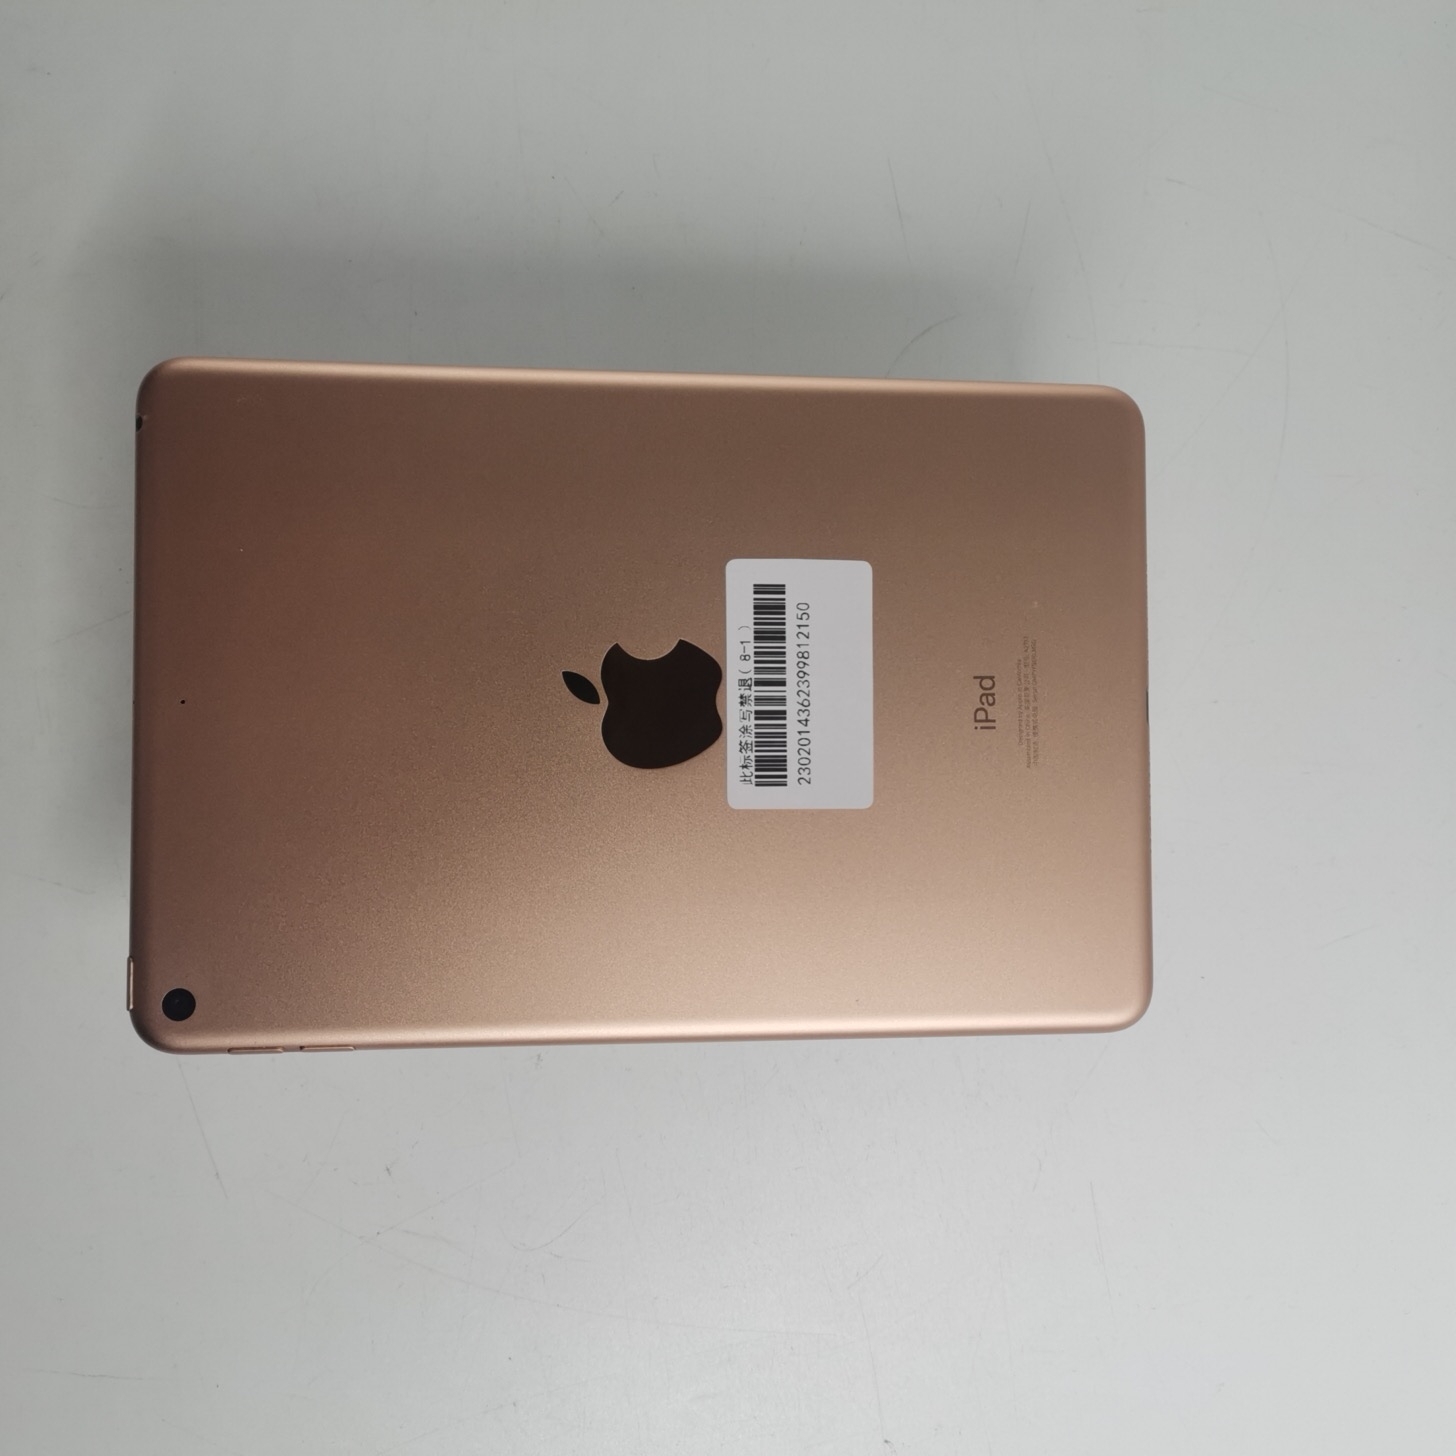 苹果【iPad mini 5】WIFI版 金色 256G 国行 9成新 